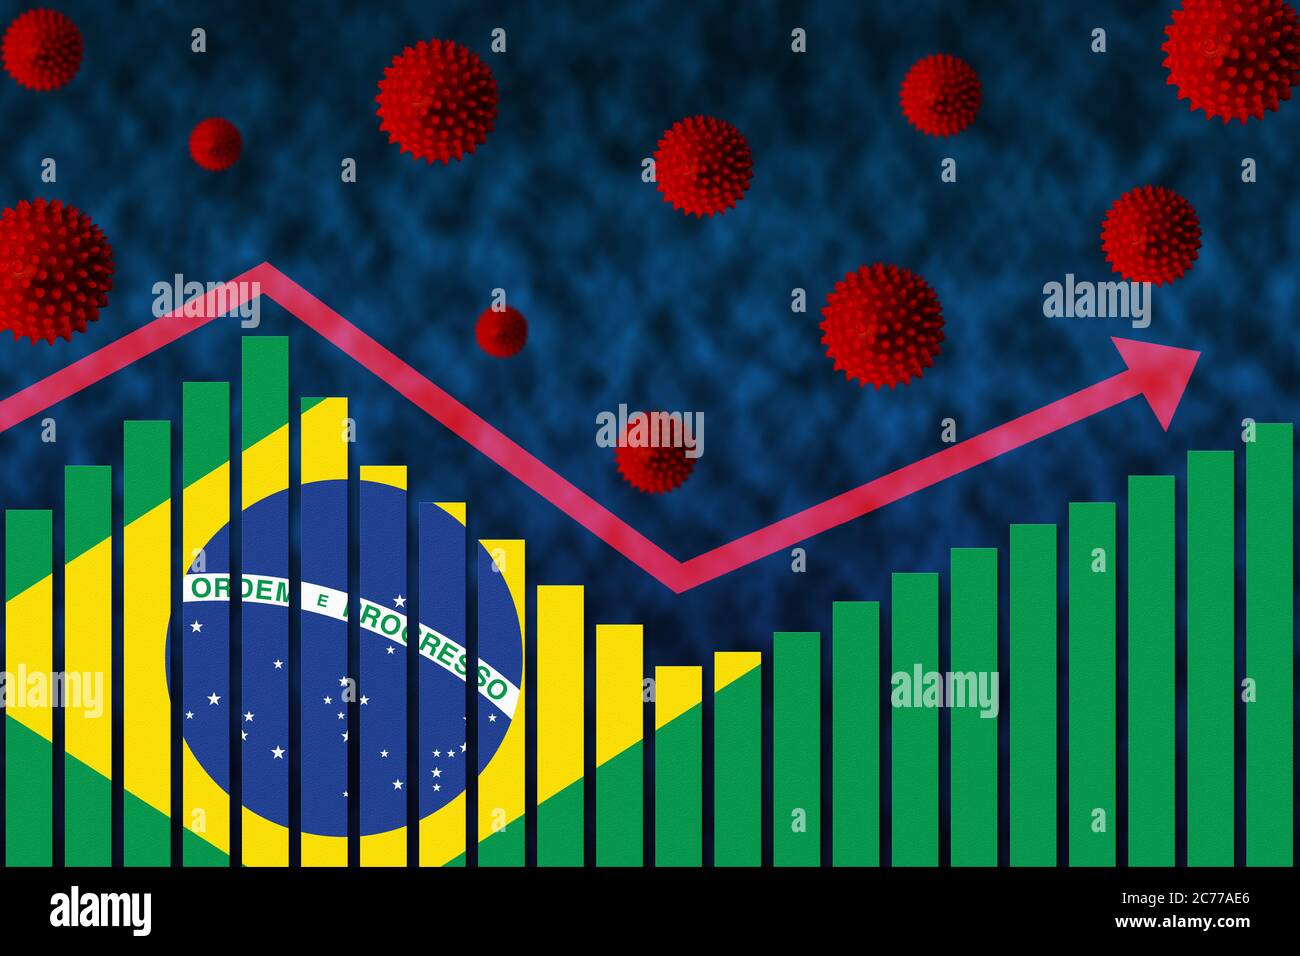 Bandera de Brasil en el gráfico de barras concepto de la infección por coronavirus COVID-19 de segunda onda casos después de la primera onda ilustrado por el gráfico y los símbolos de virus AF Foto de stock